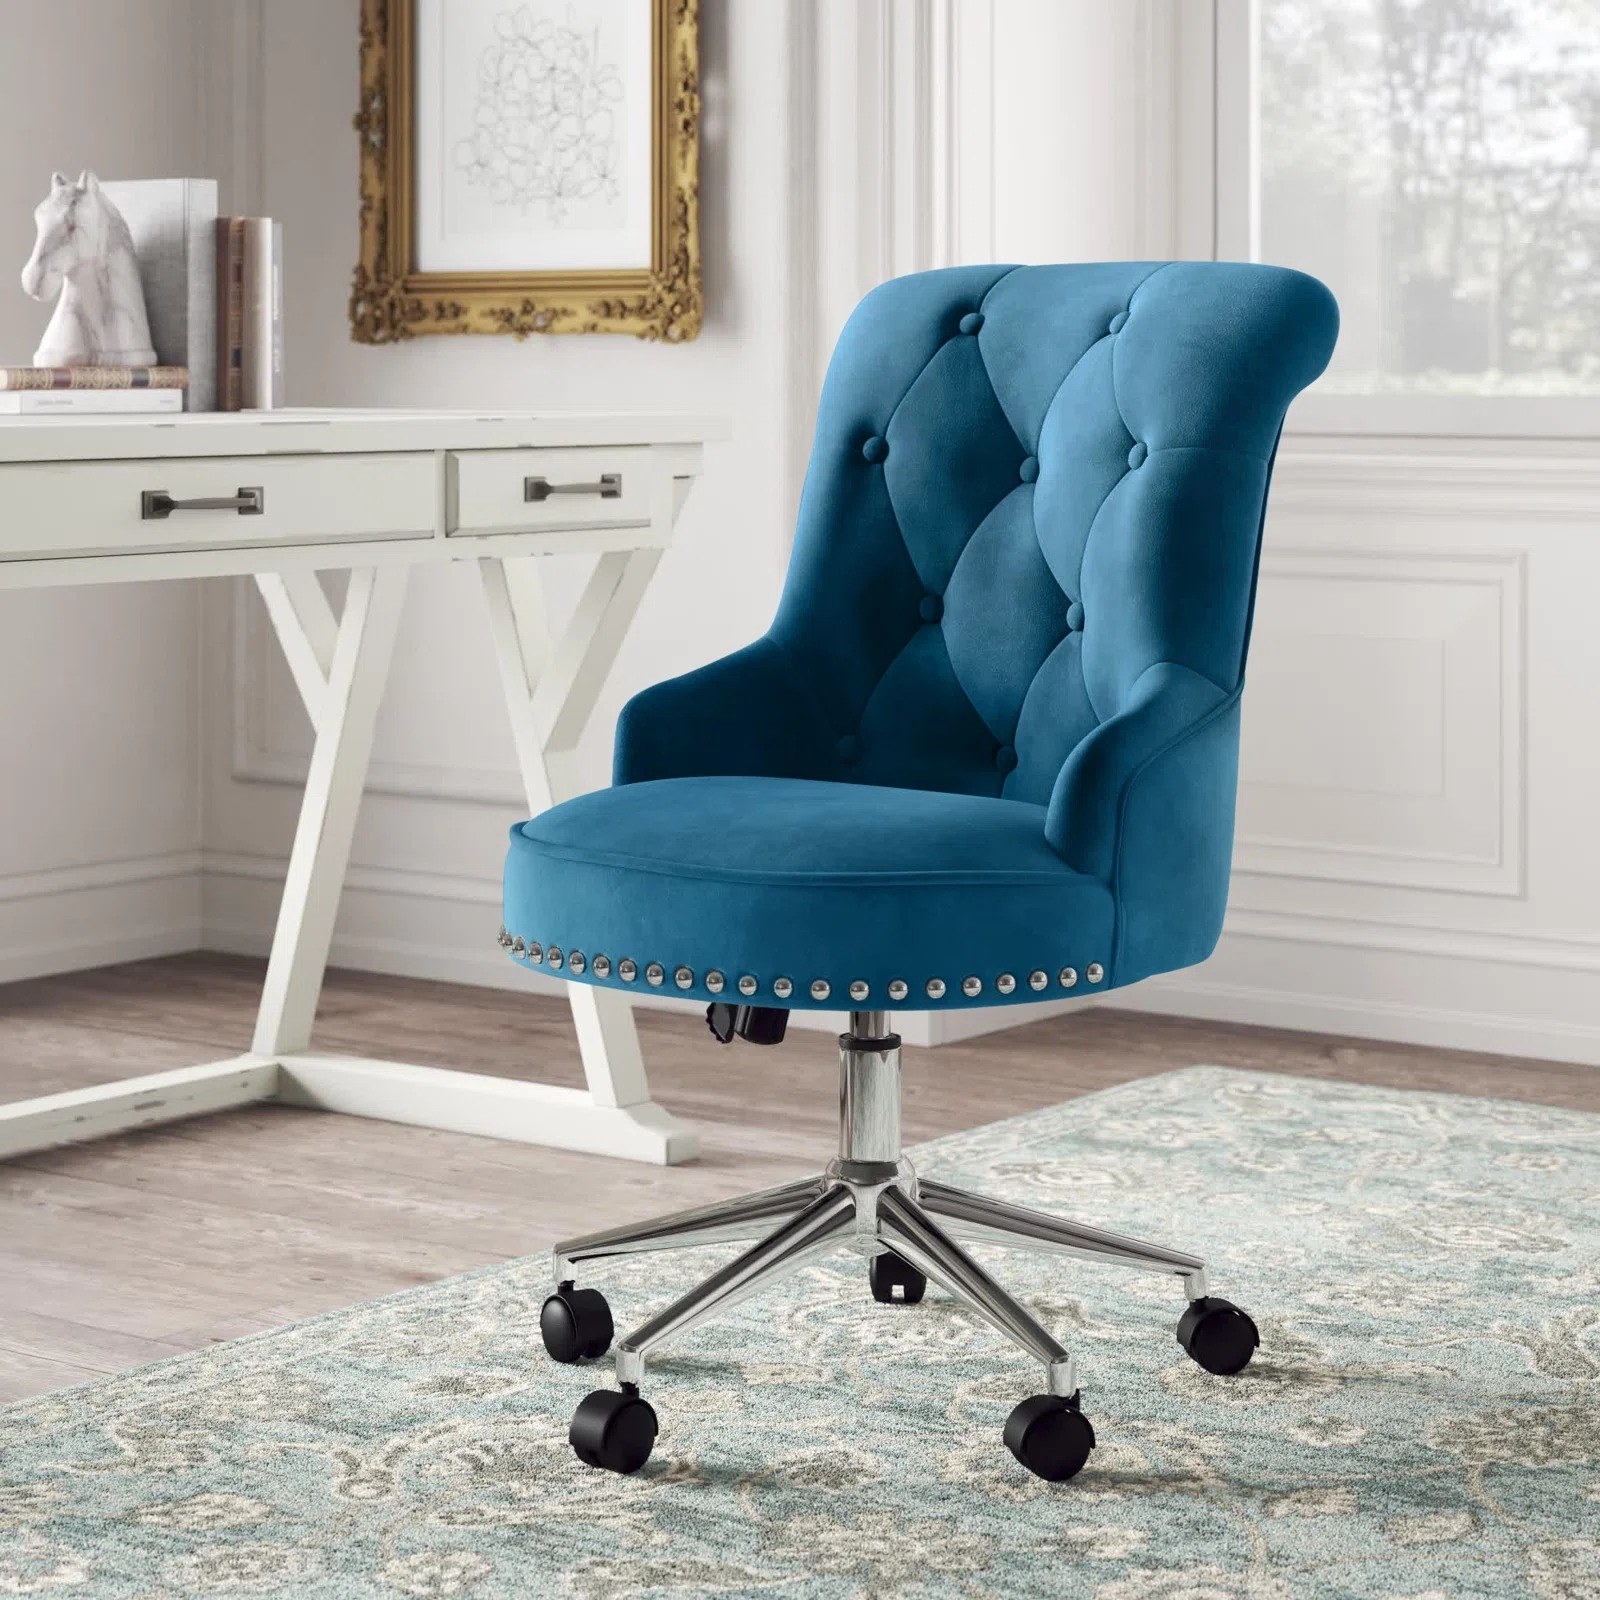 Blue velvet task chair on carpet next to a desk